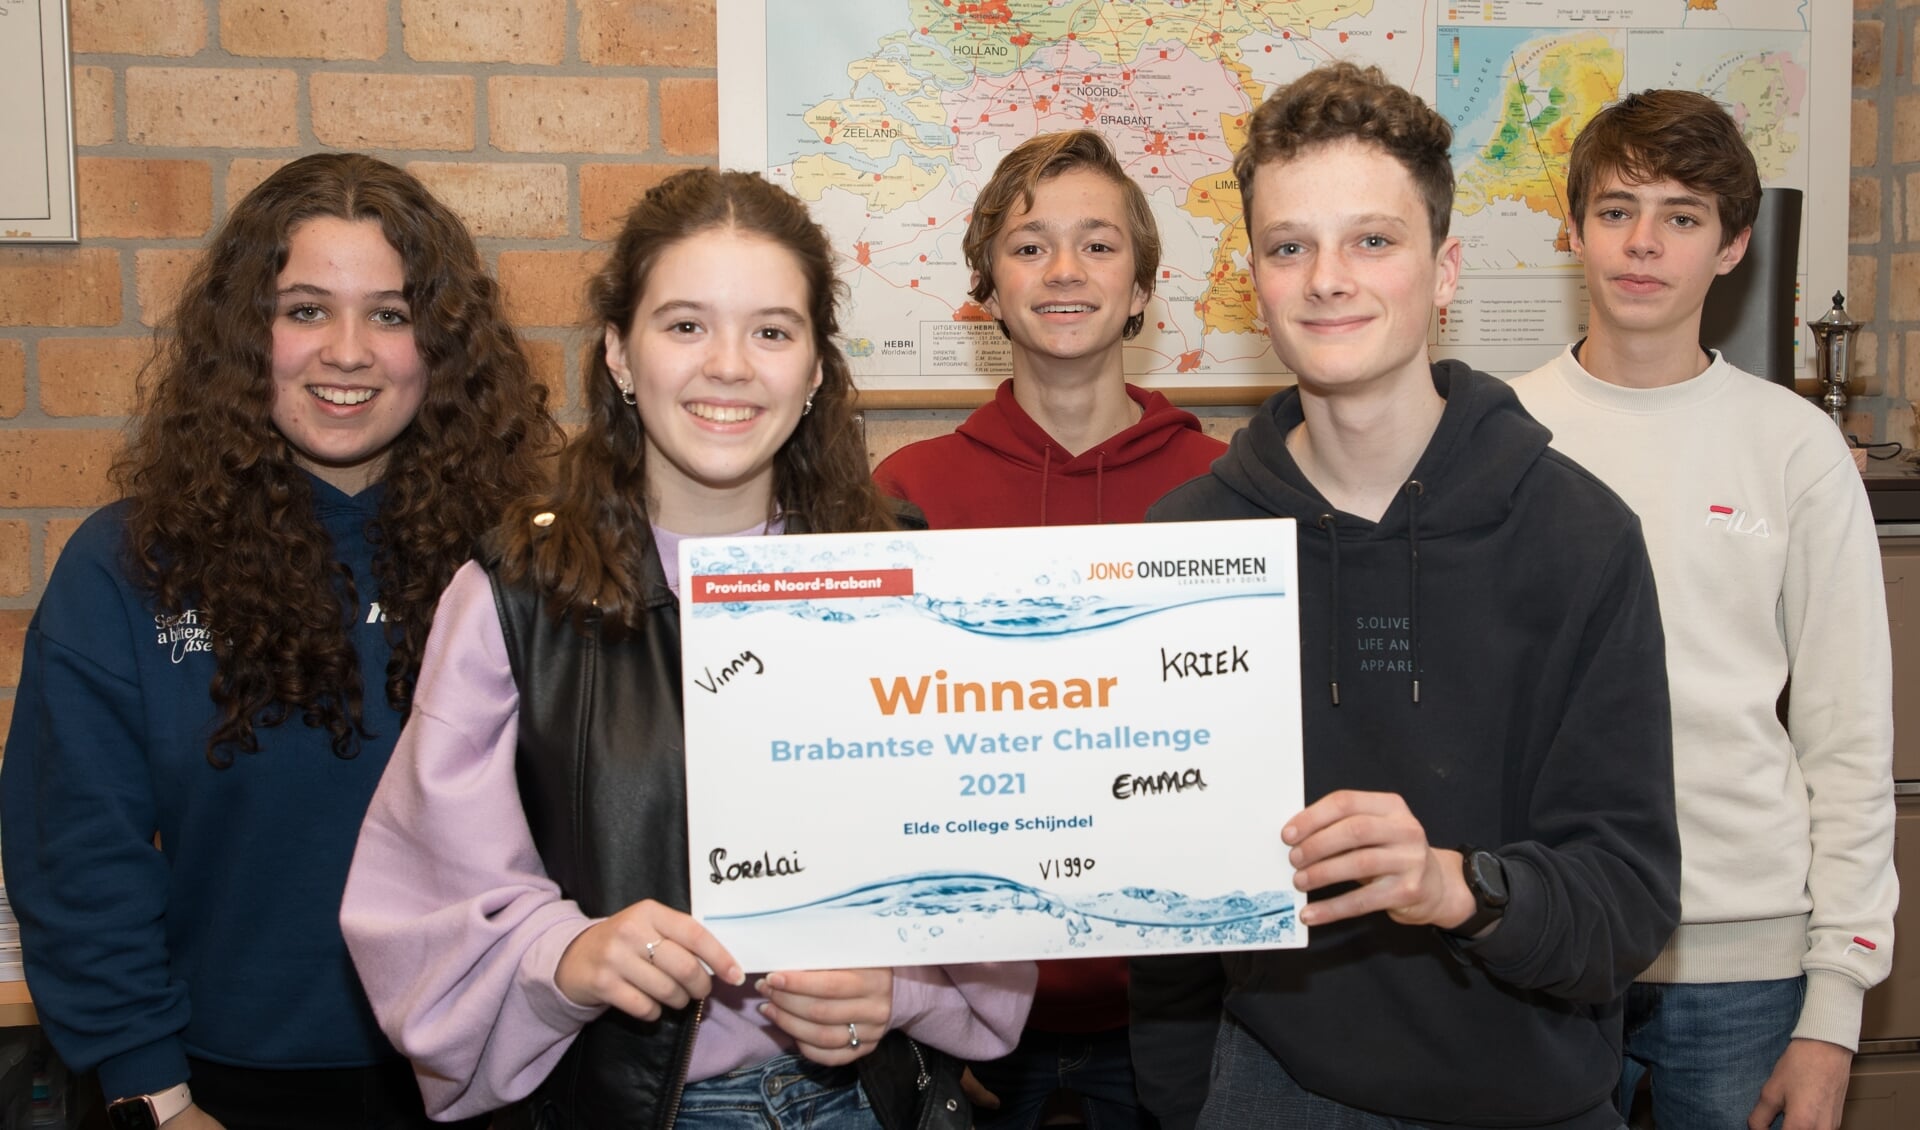 Lorelai, Emma, Viggo, Vinny en Kriek uit leerjaar V4ak1 wonnen de finale van de Brabantse Waterchallenge. Foto: Wiek van Lieshout